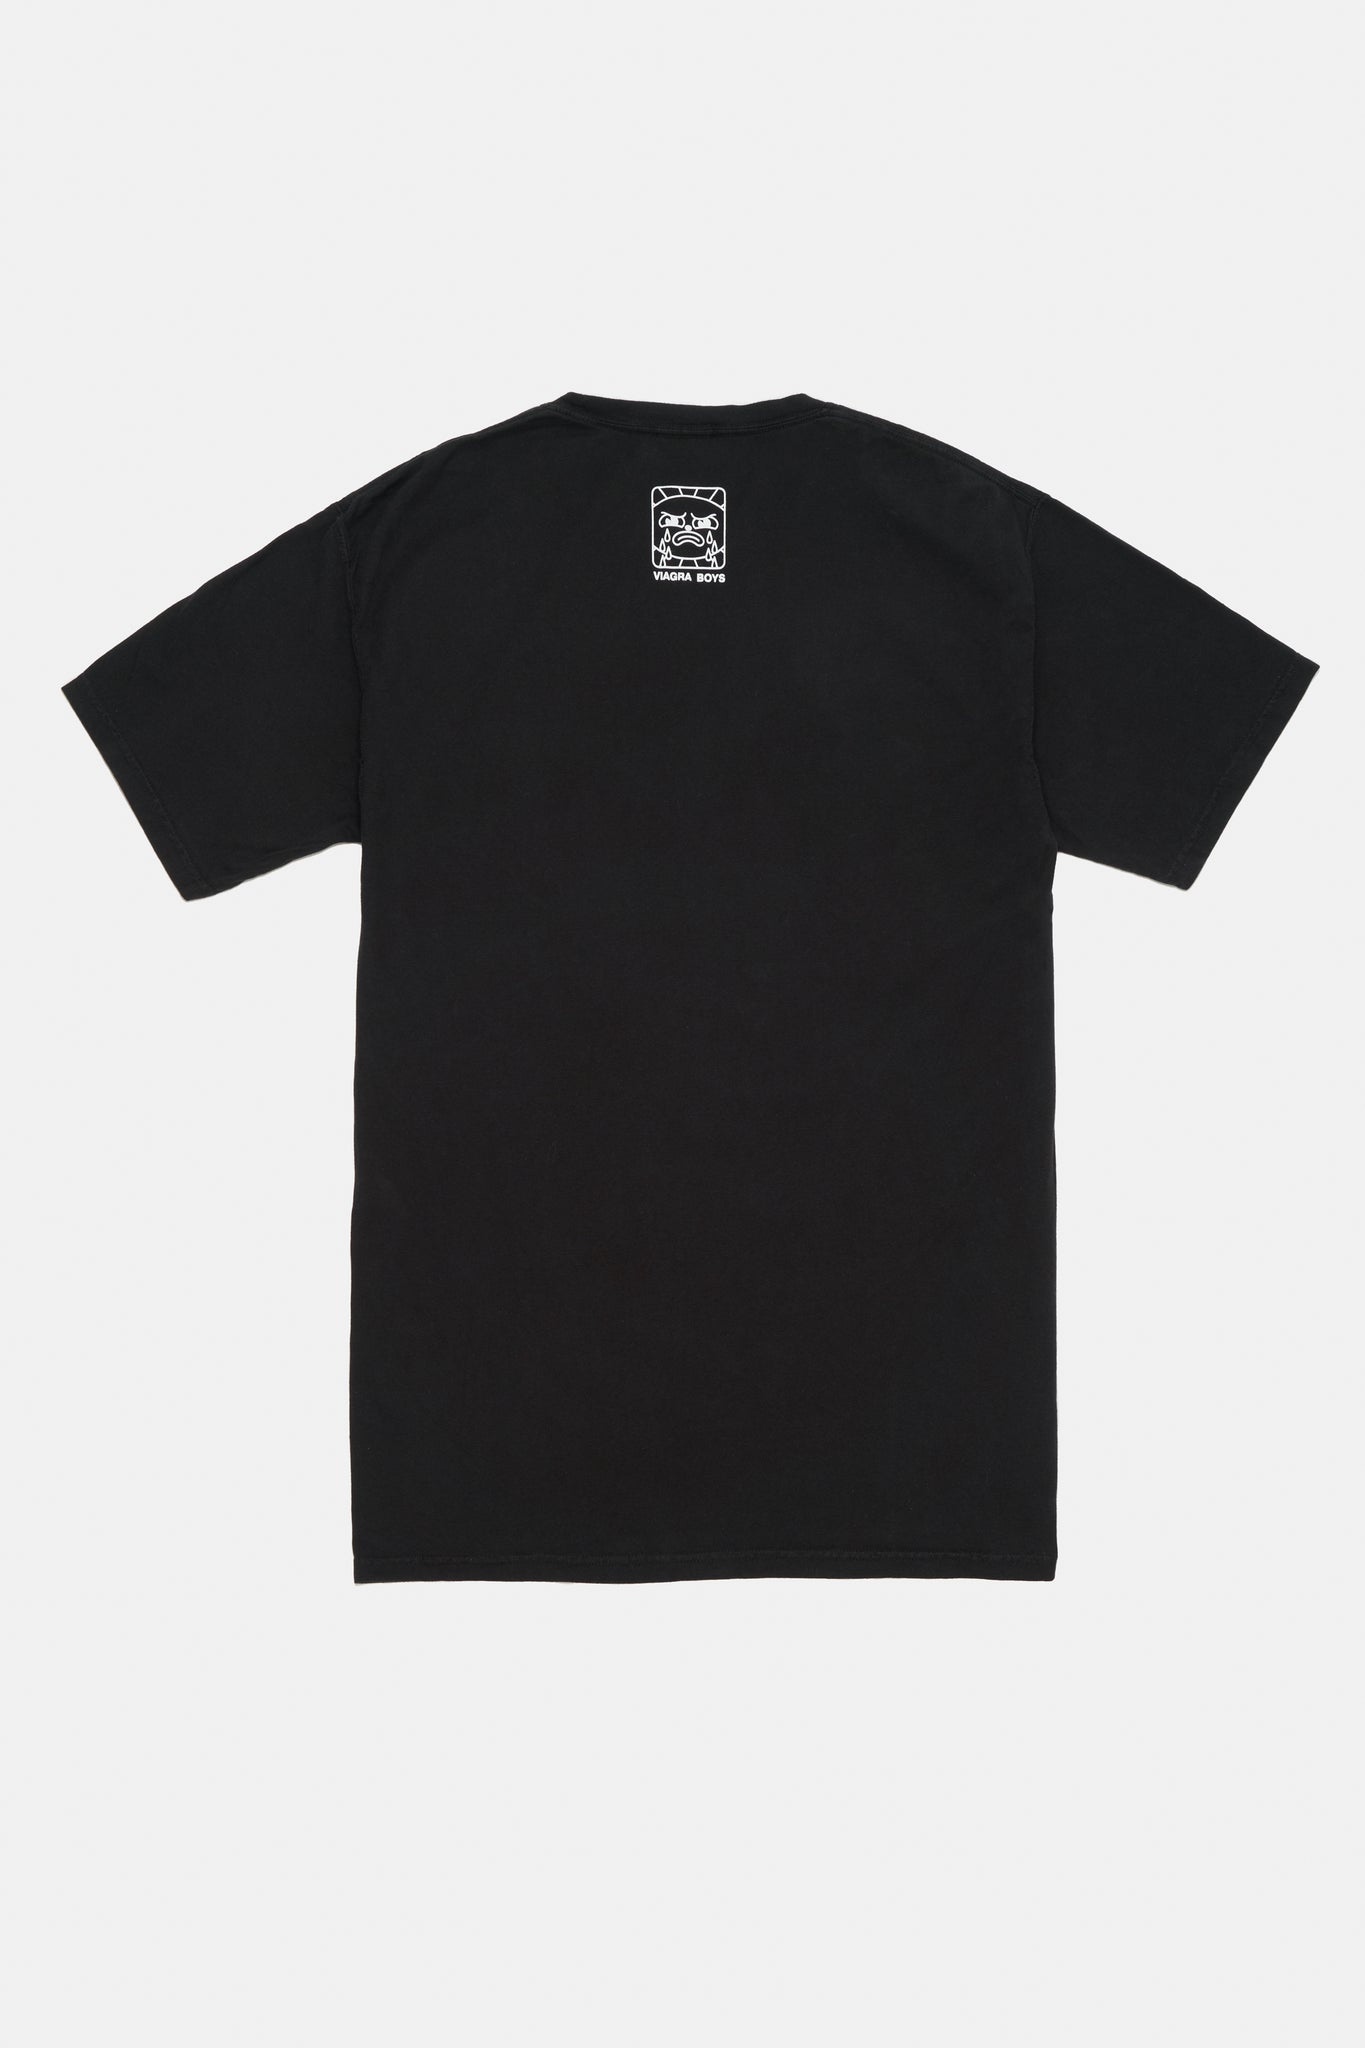 Crisis T-shirt (Tour edition) (Black)